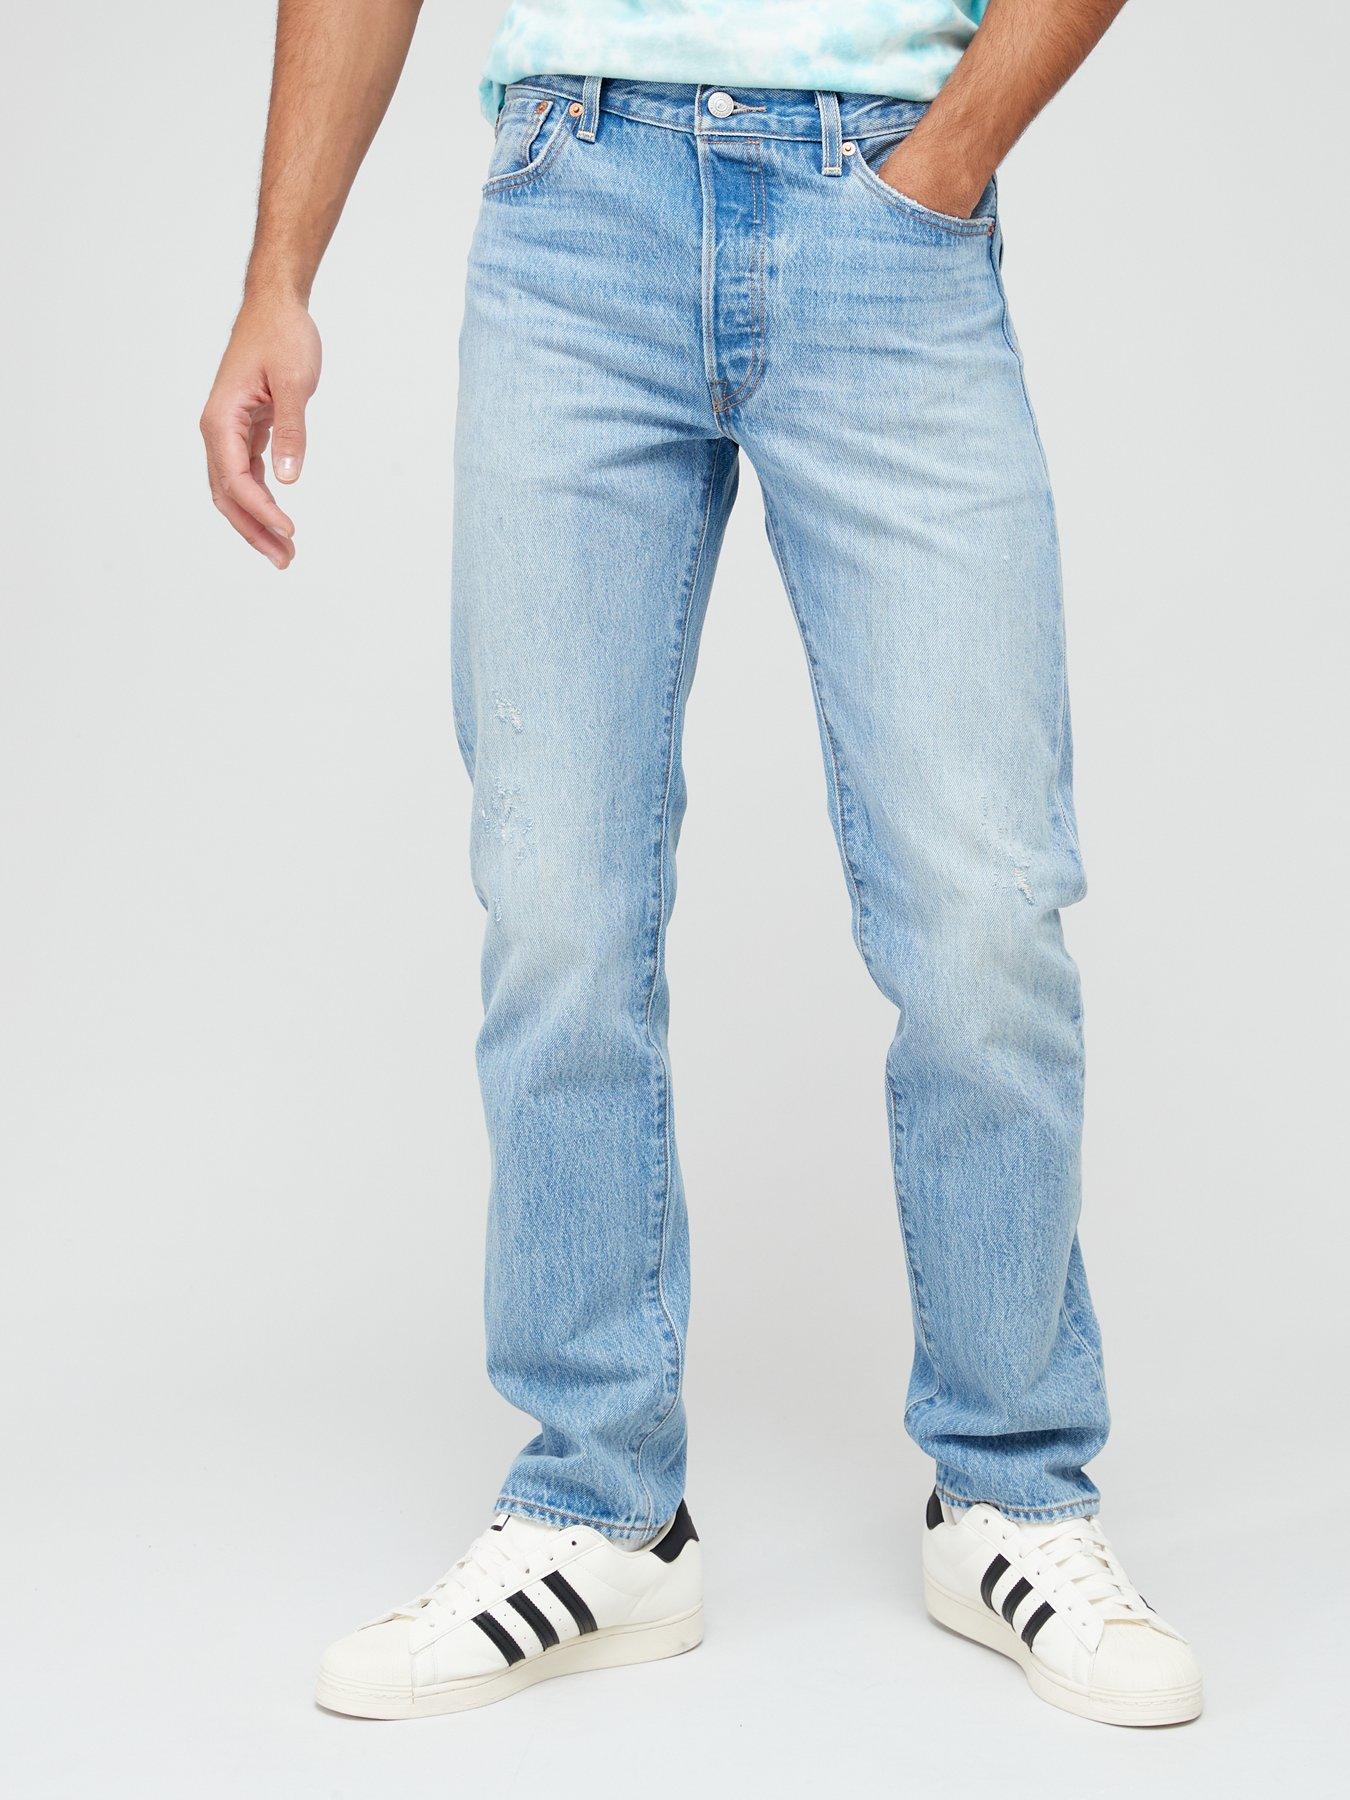 Levi's Men's 501 Original Fit Jeans Straight Leg Button Fly 0134 Light  Stonewash 